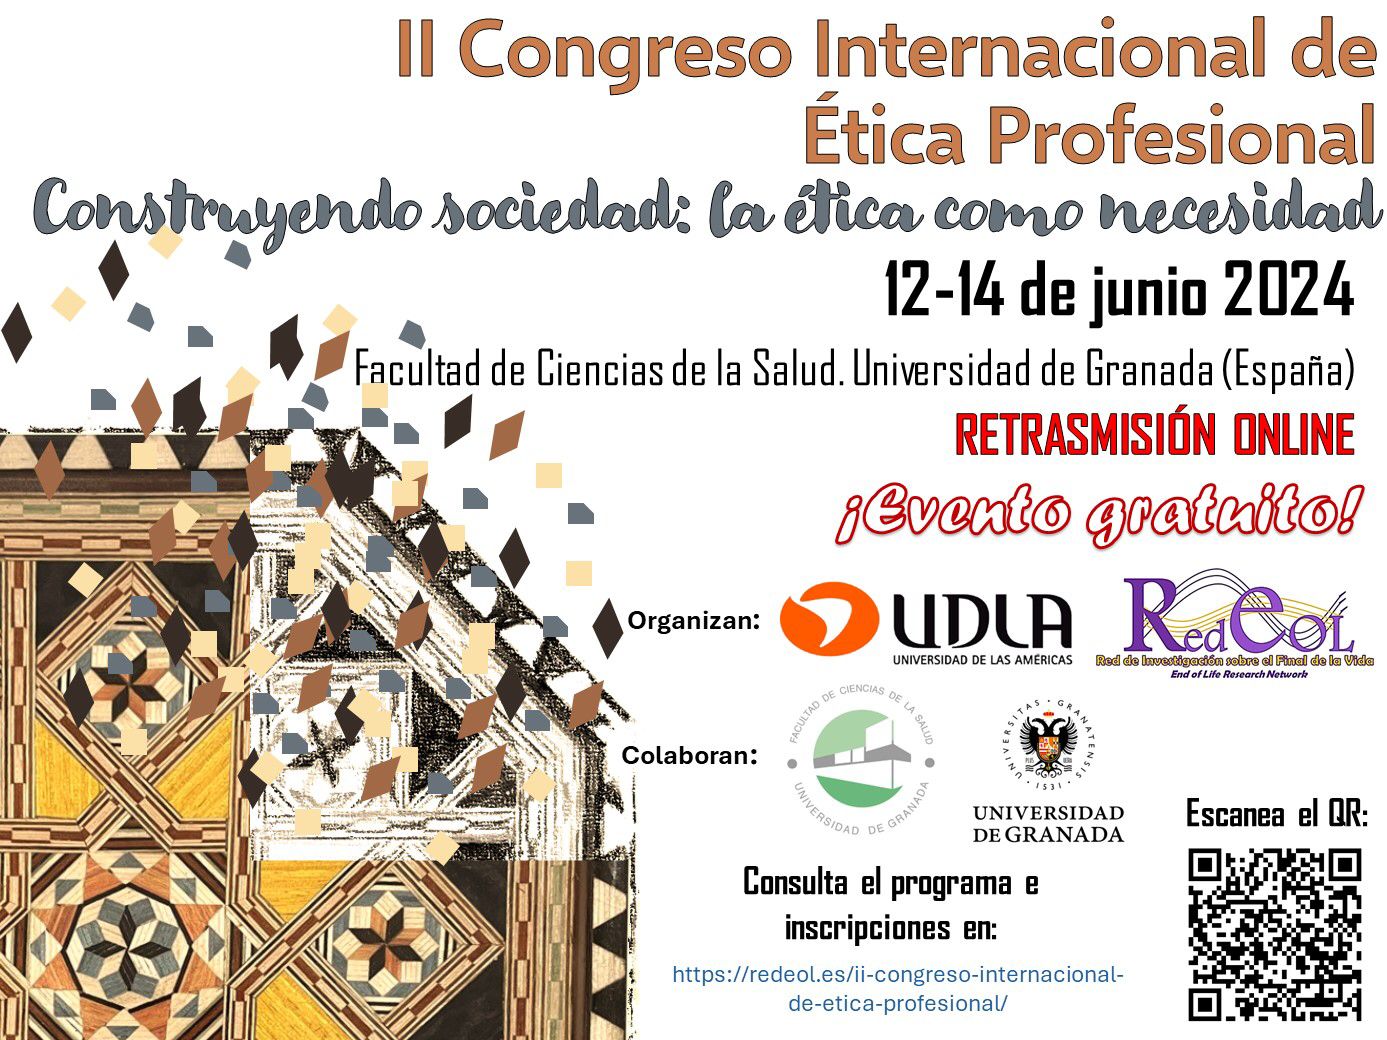 Cartel anunciador del II Congreso Internacional de Ética Profesional